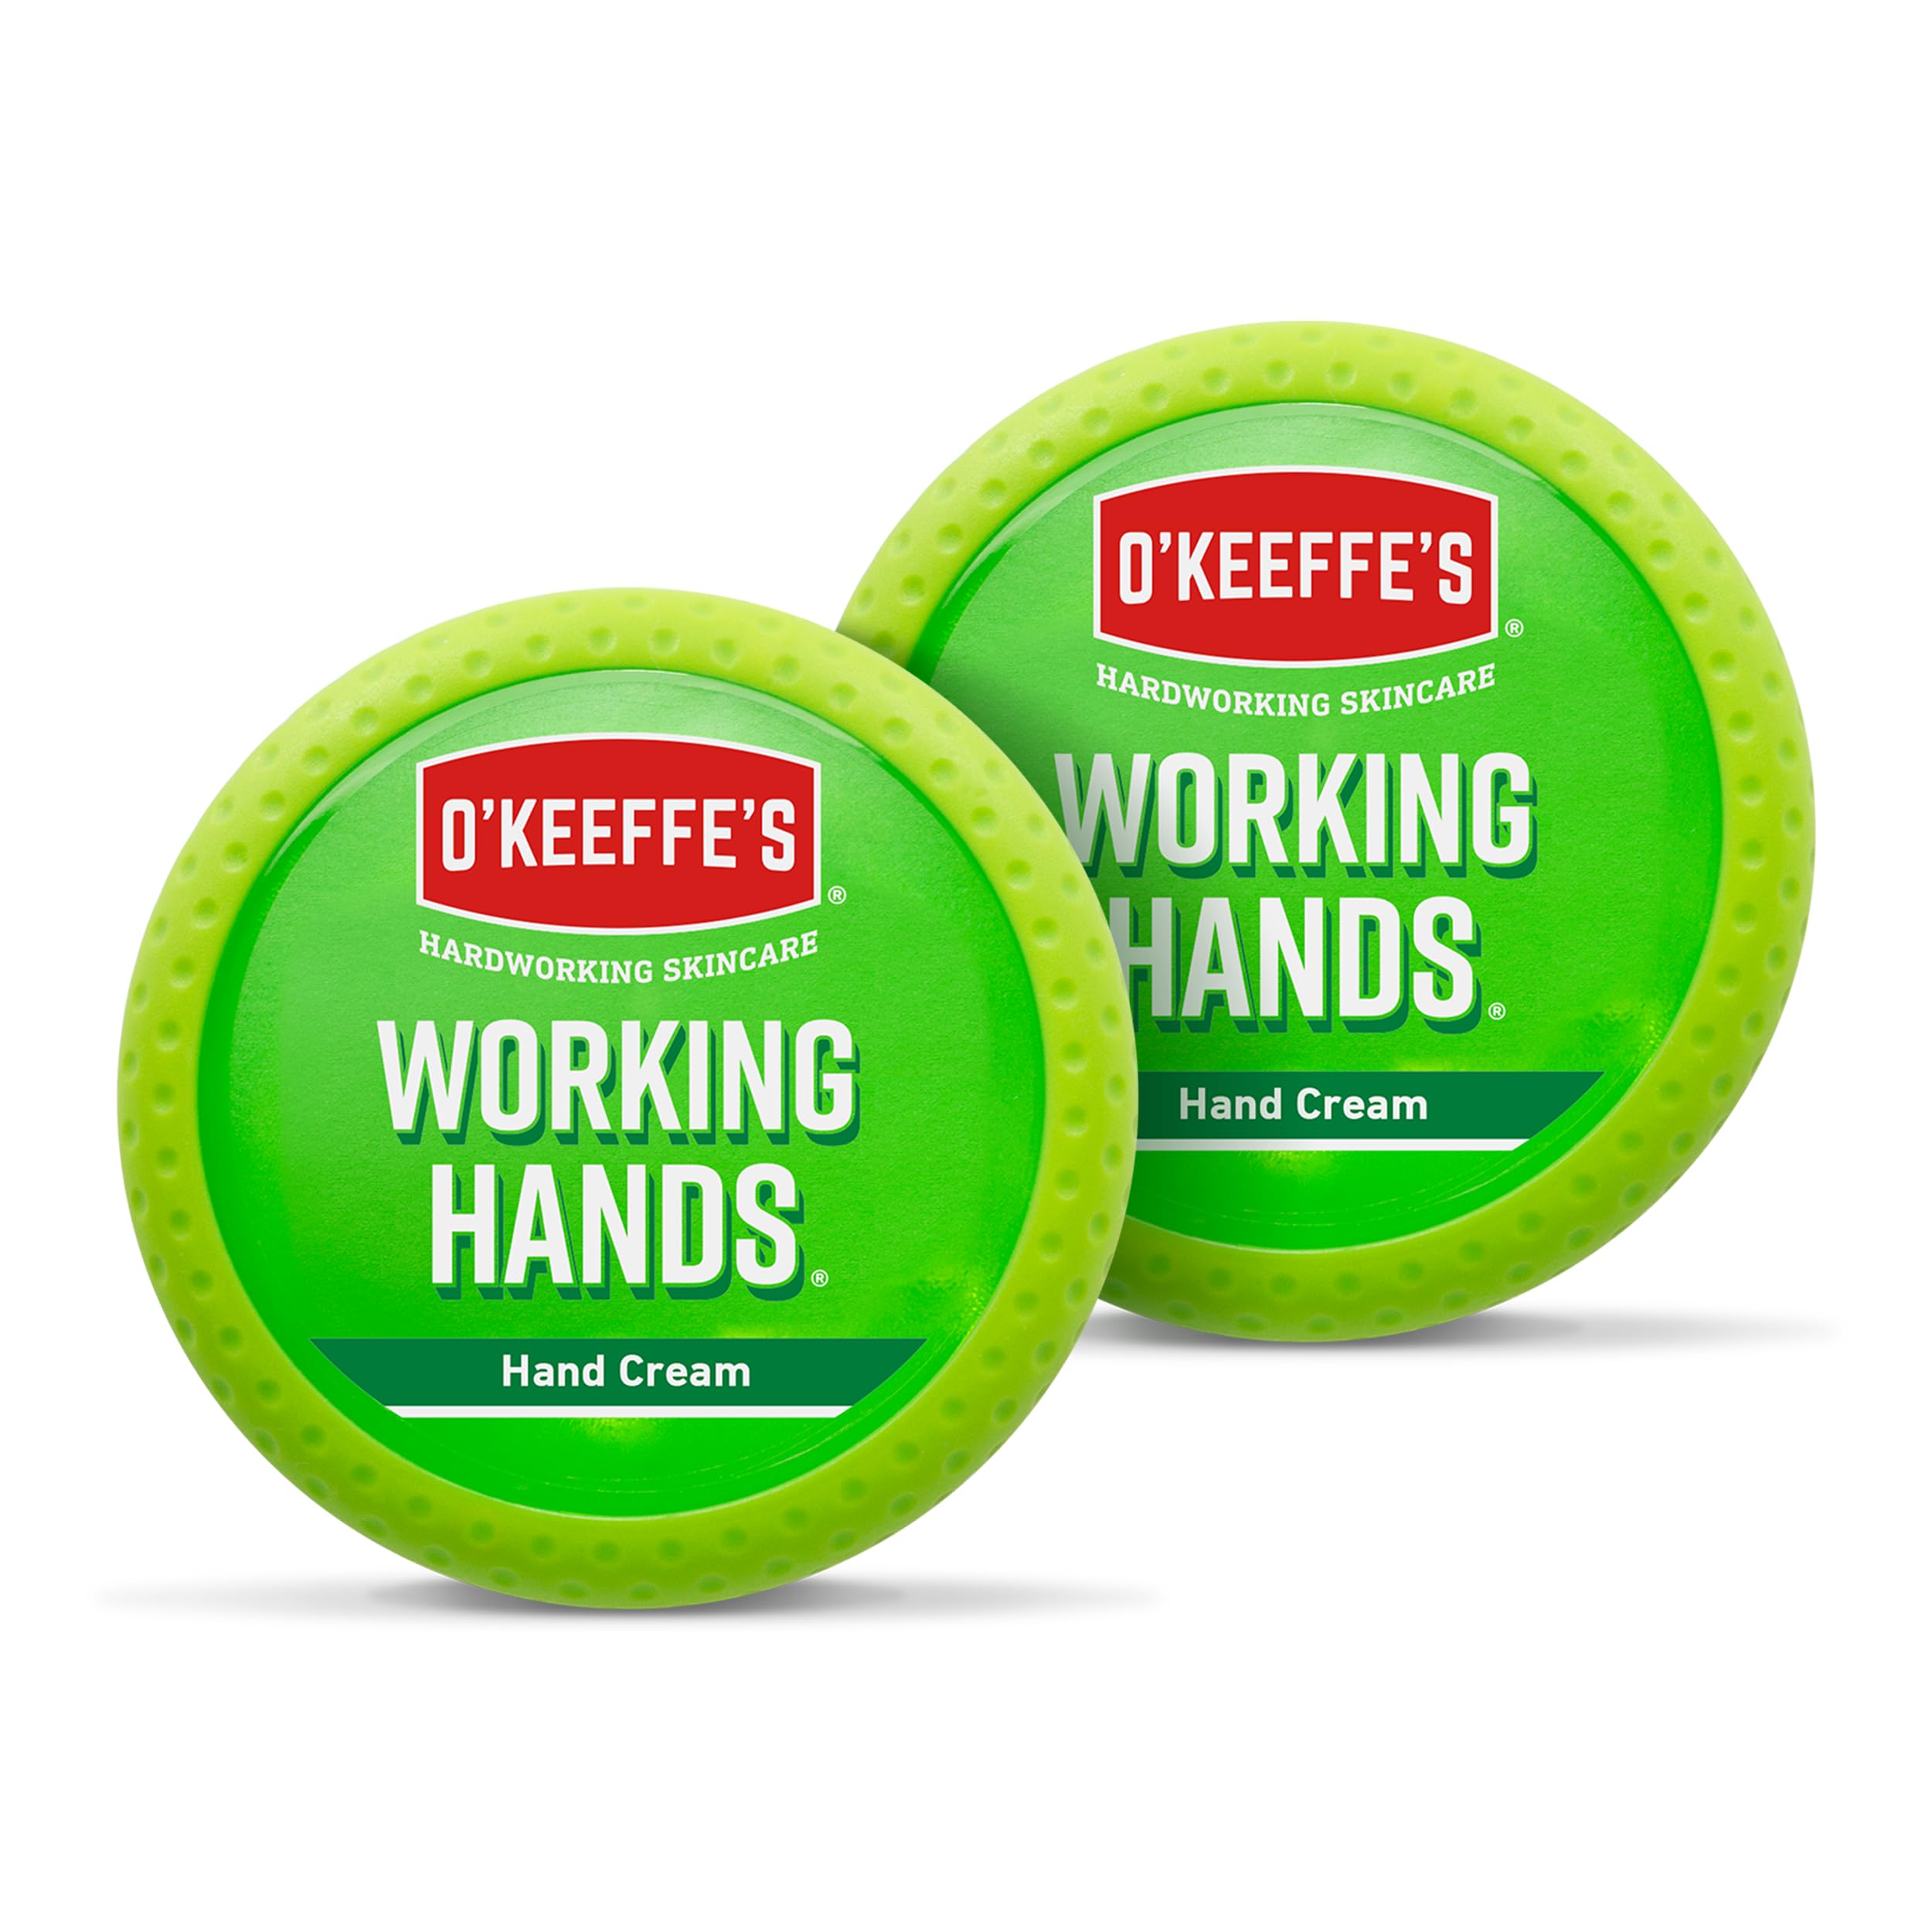 O'Keeffe's Working Hände, 96 g Glas (2 Stück) – Handcreme für extrem trockene, rissige Hände | Sofort Feuchtigkeitsniveau, schafft eine Schutzschicht und verhindert Feuchtigkeitsverlust